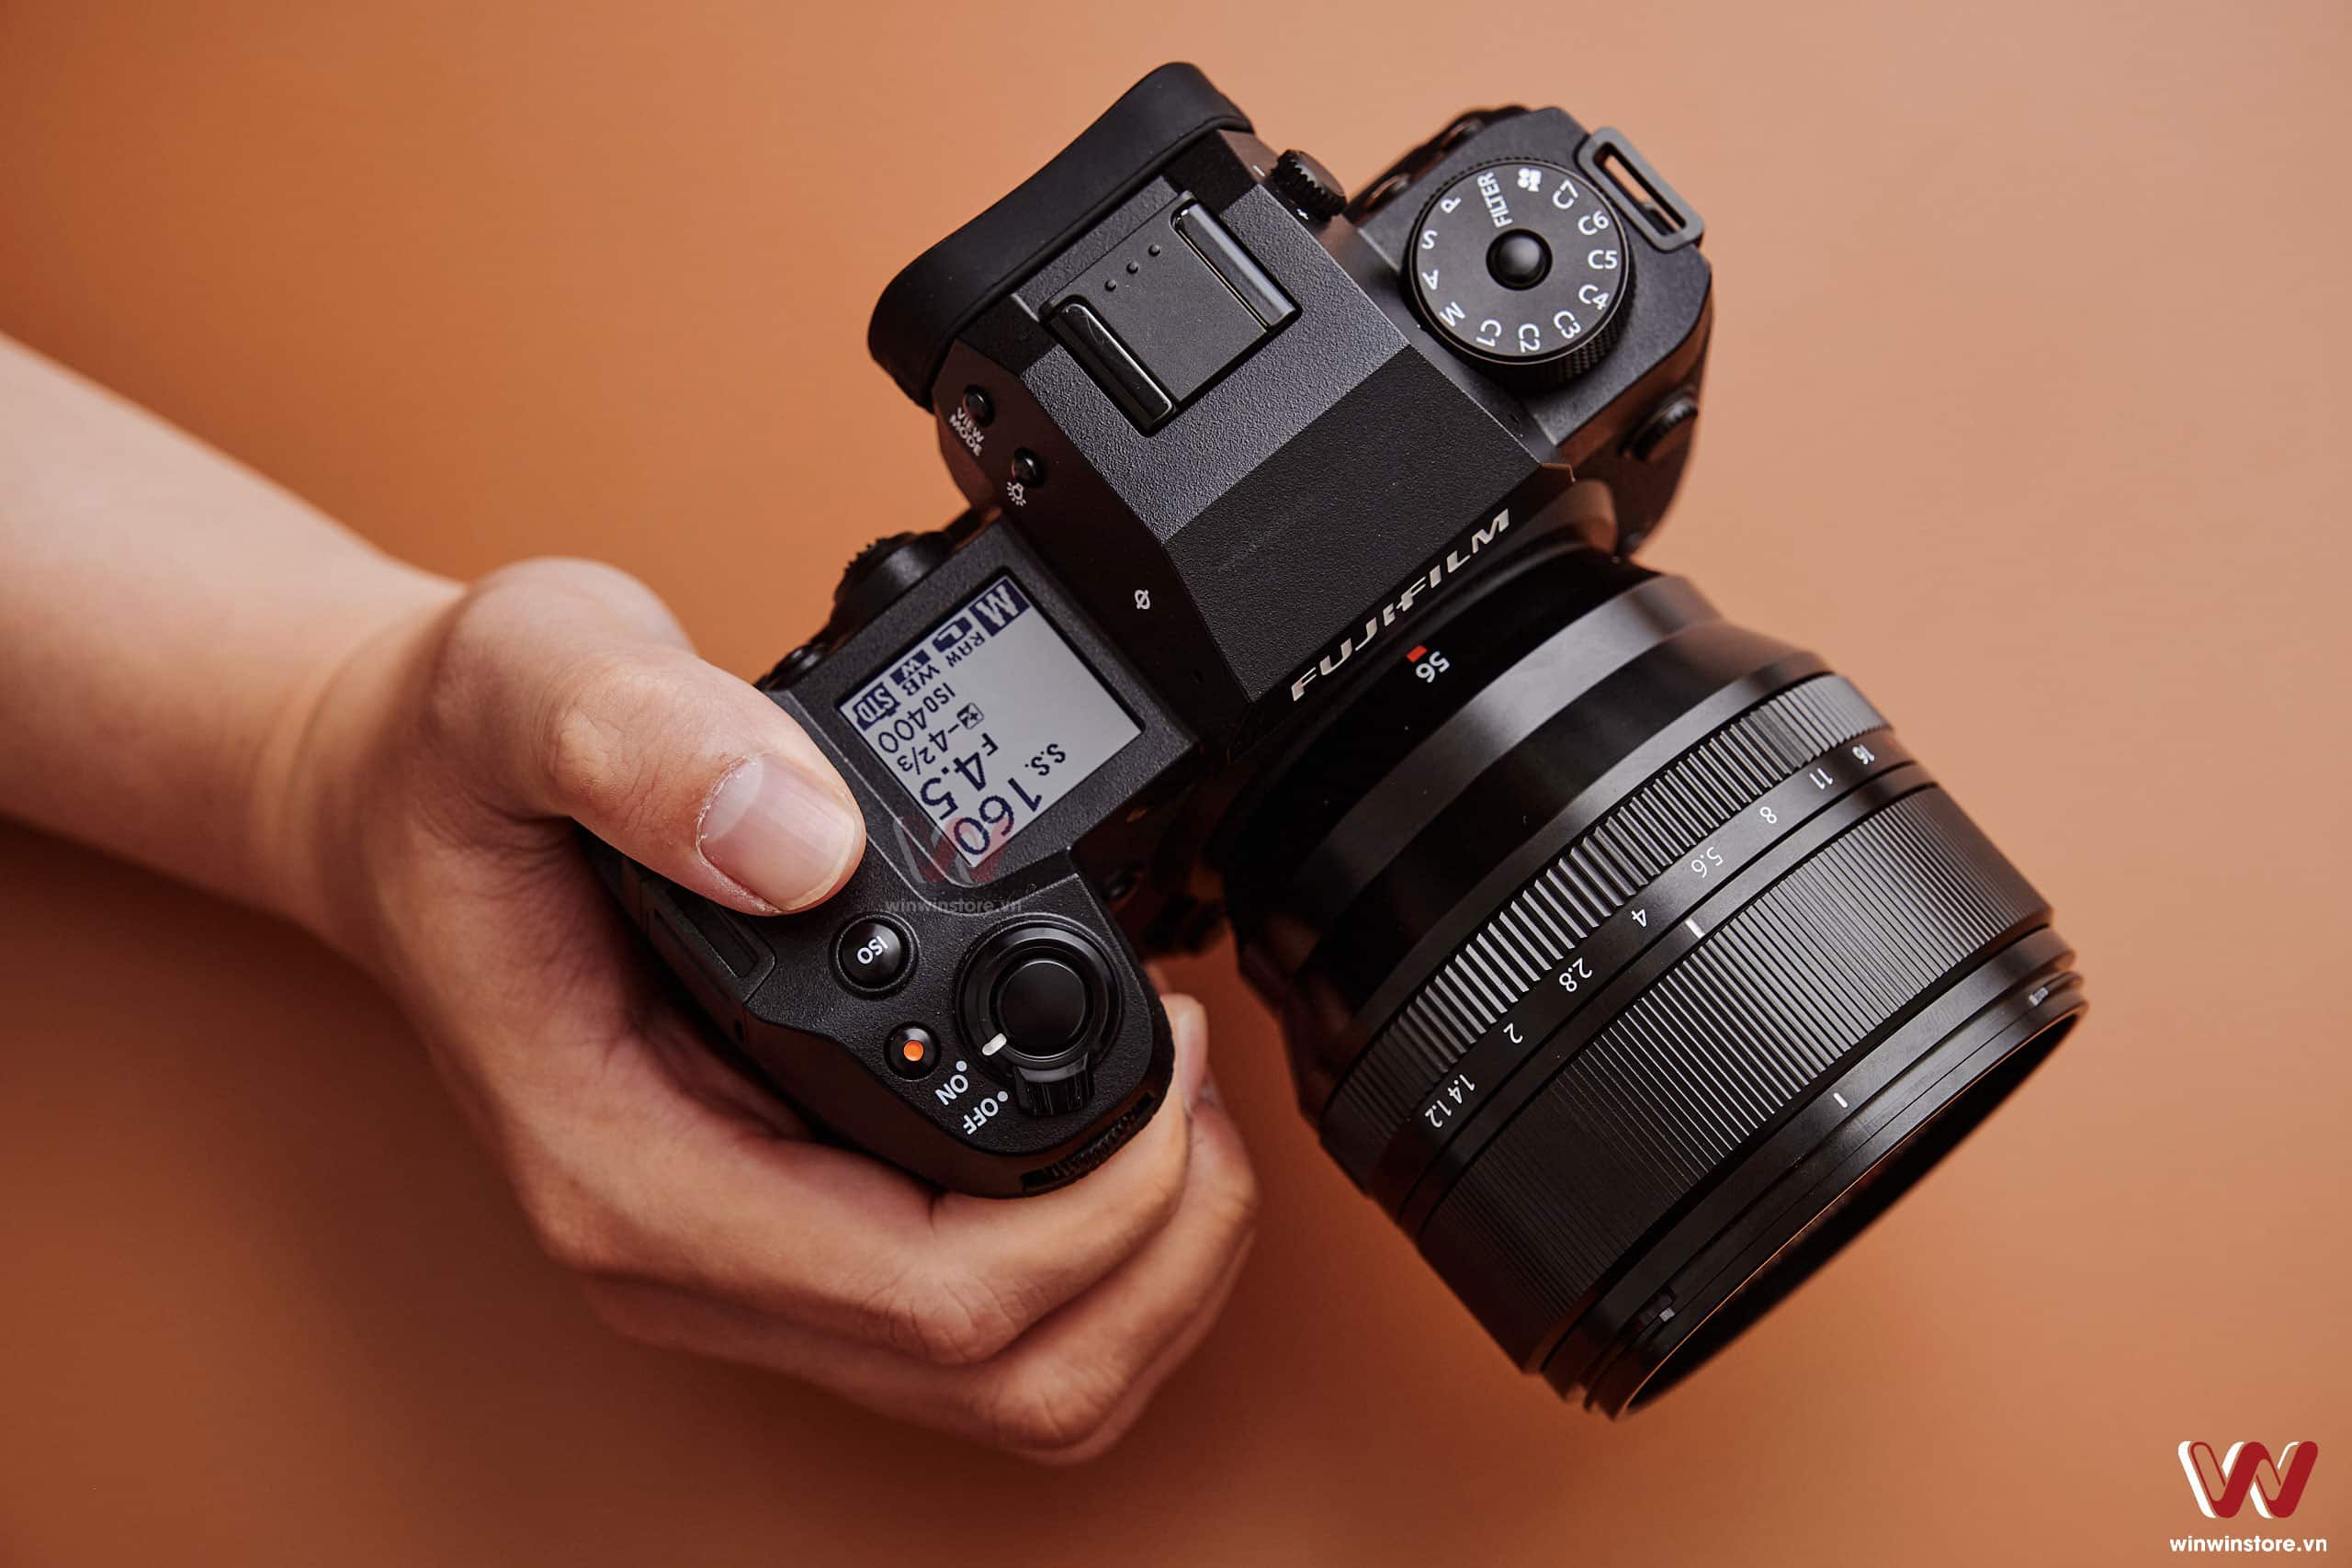 Fujifilm tung cập nhật firmware mới cho máy ảnh X-H2 và X-H2s, sửa các lỗi và tối ưu hỗ trợ với grip FT-XH